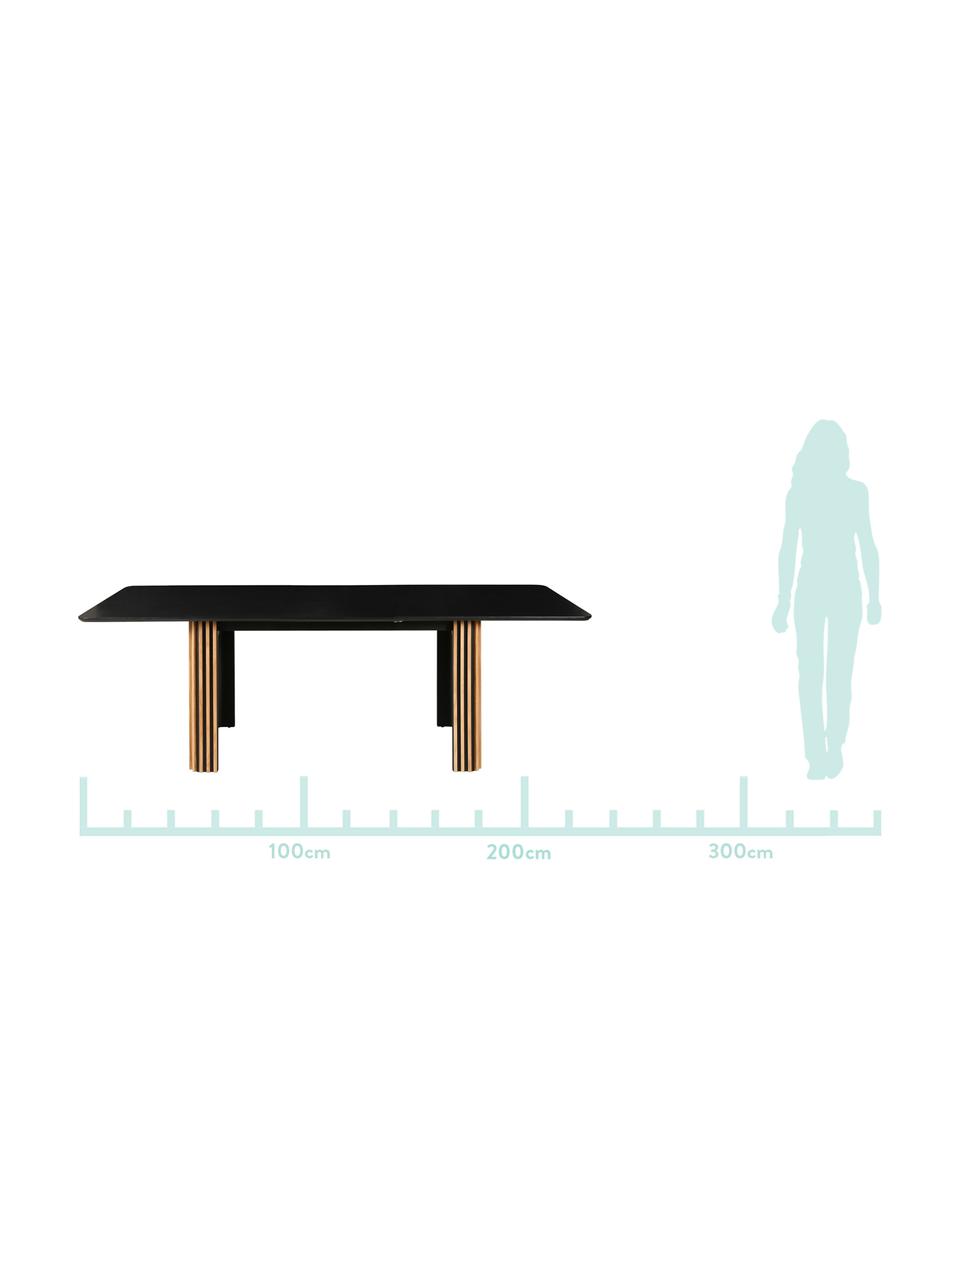 Rozkládací jídelní stůl Linea, 180-230 x 90 cm, Černá, dub, Š 180 až 230, H 90 cm